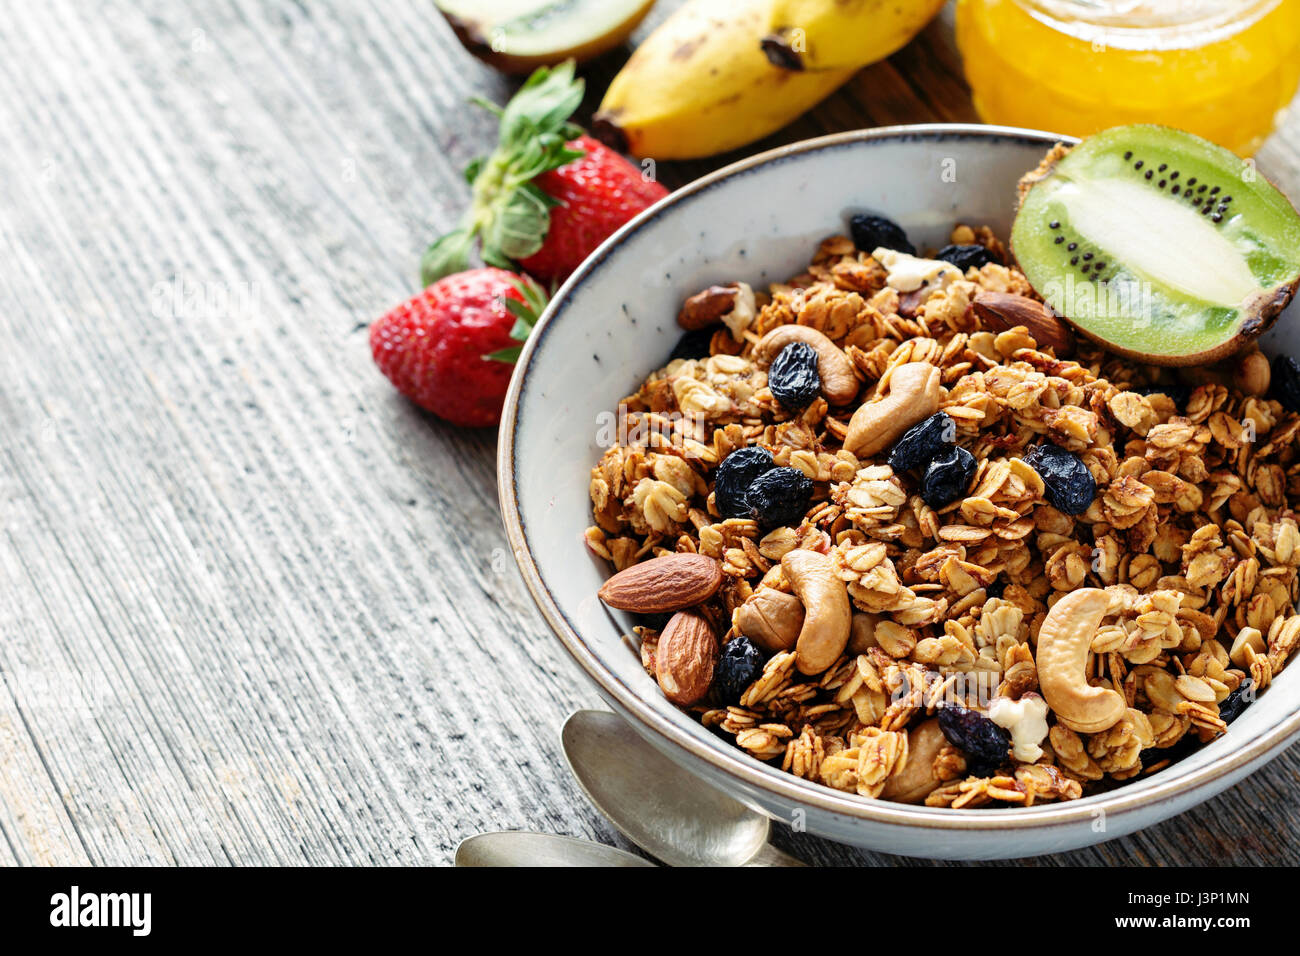 Gesundes Frühstück Essen: Schüssel Müsli Müsli, Obst und Honig auf Holztisch. Nahaufnahme, Kopie spac Stockfoto